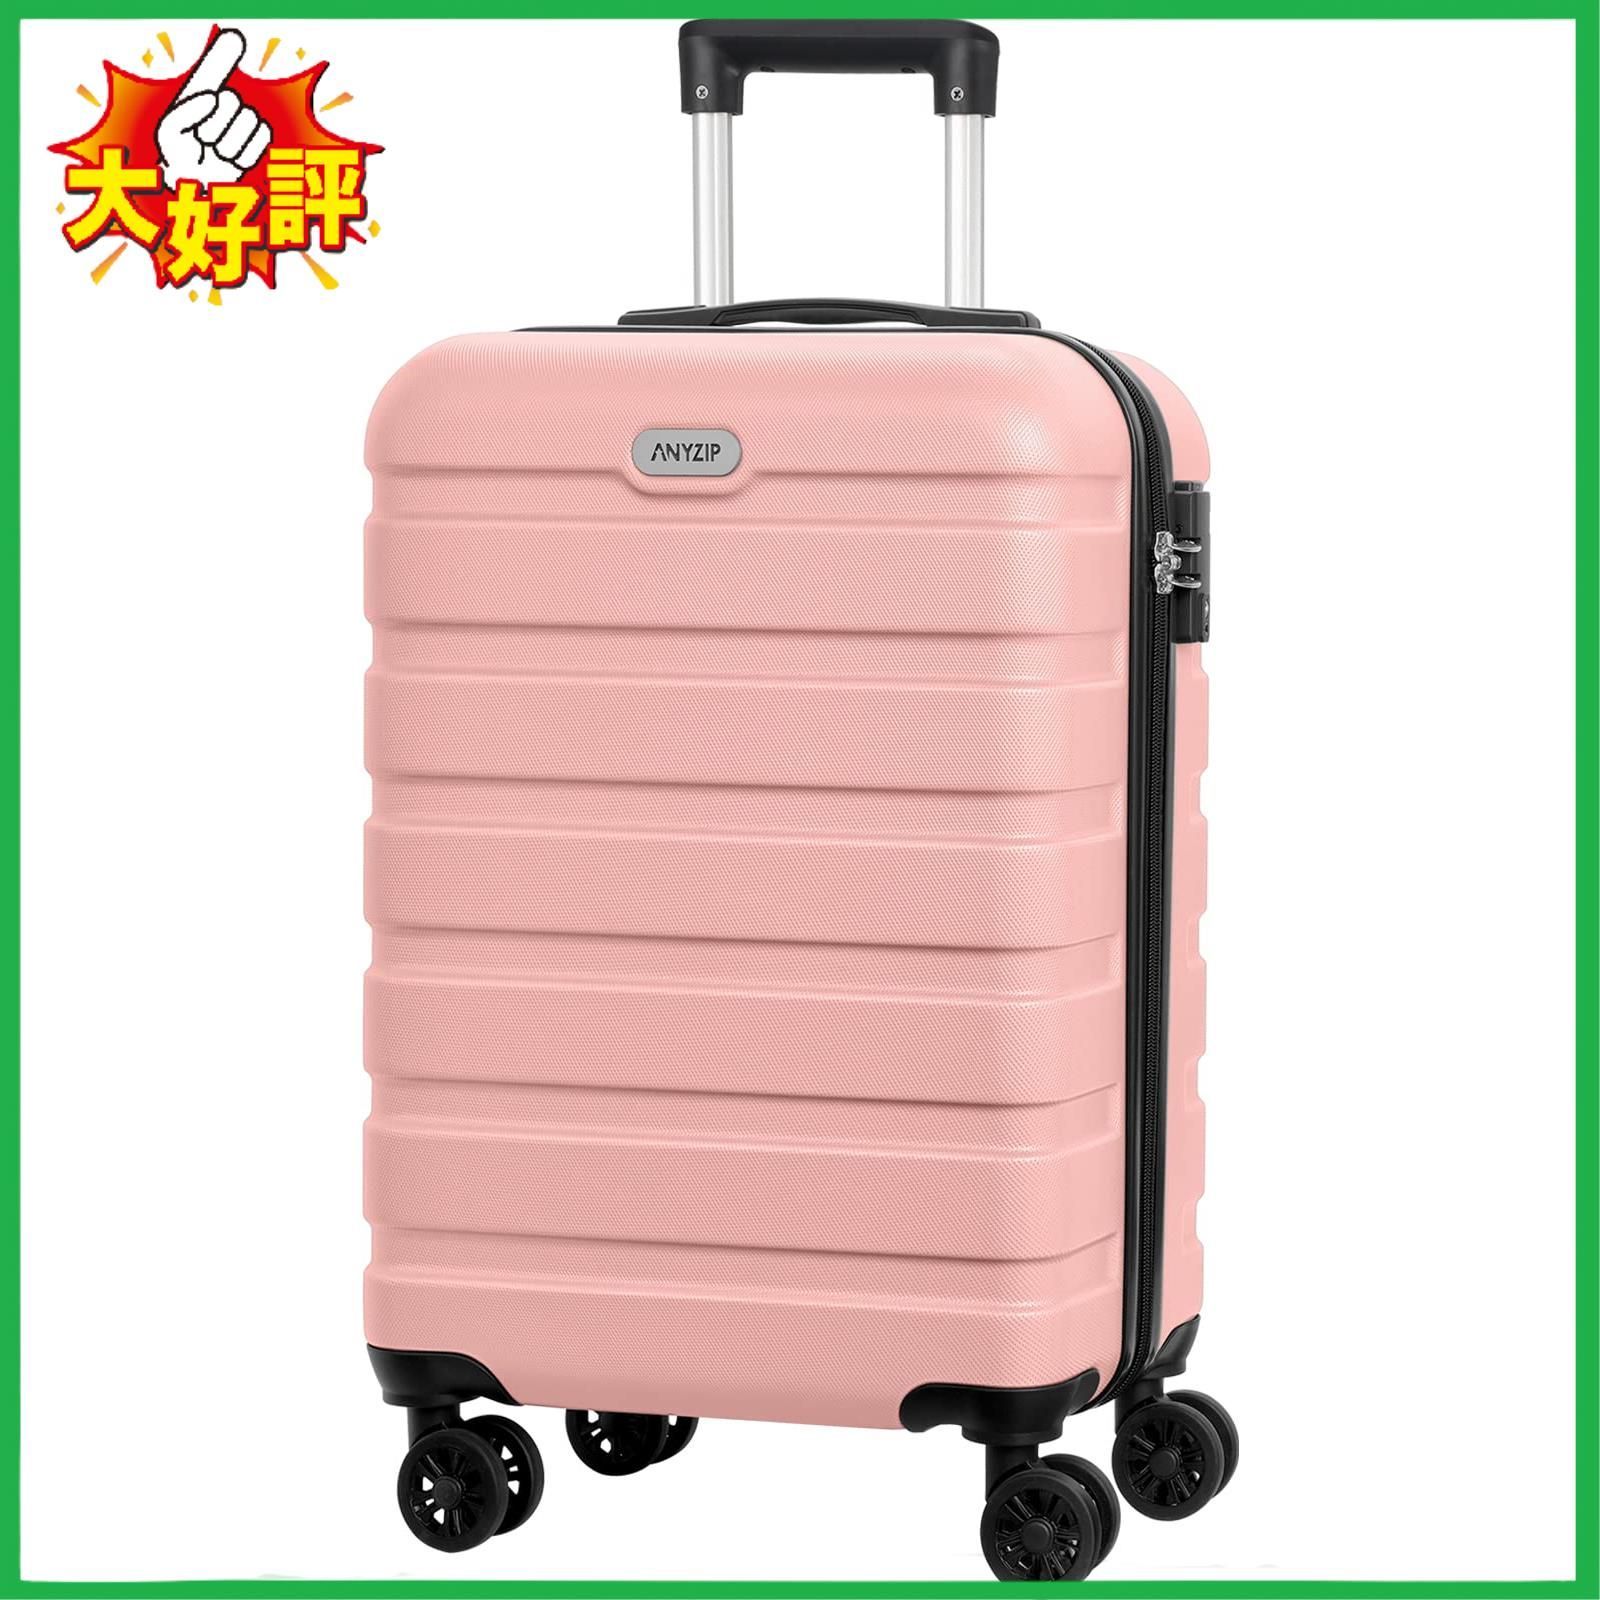 □AnyZip スーツケース キャリーケース キャリーバッグ 超軽量 大型